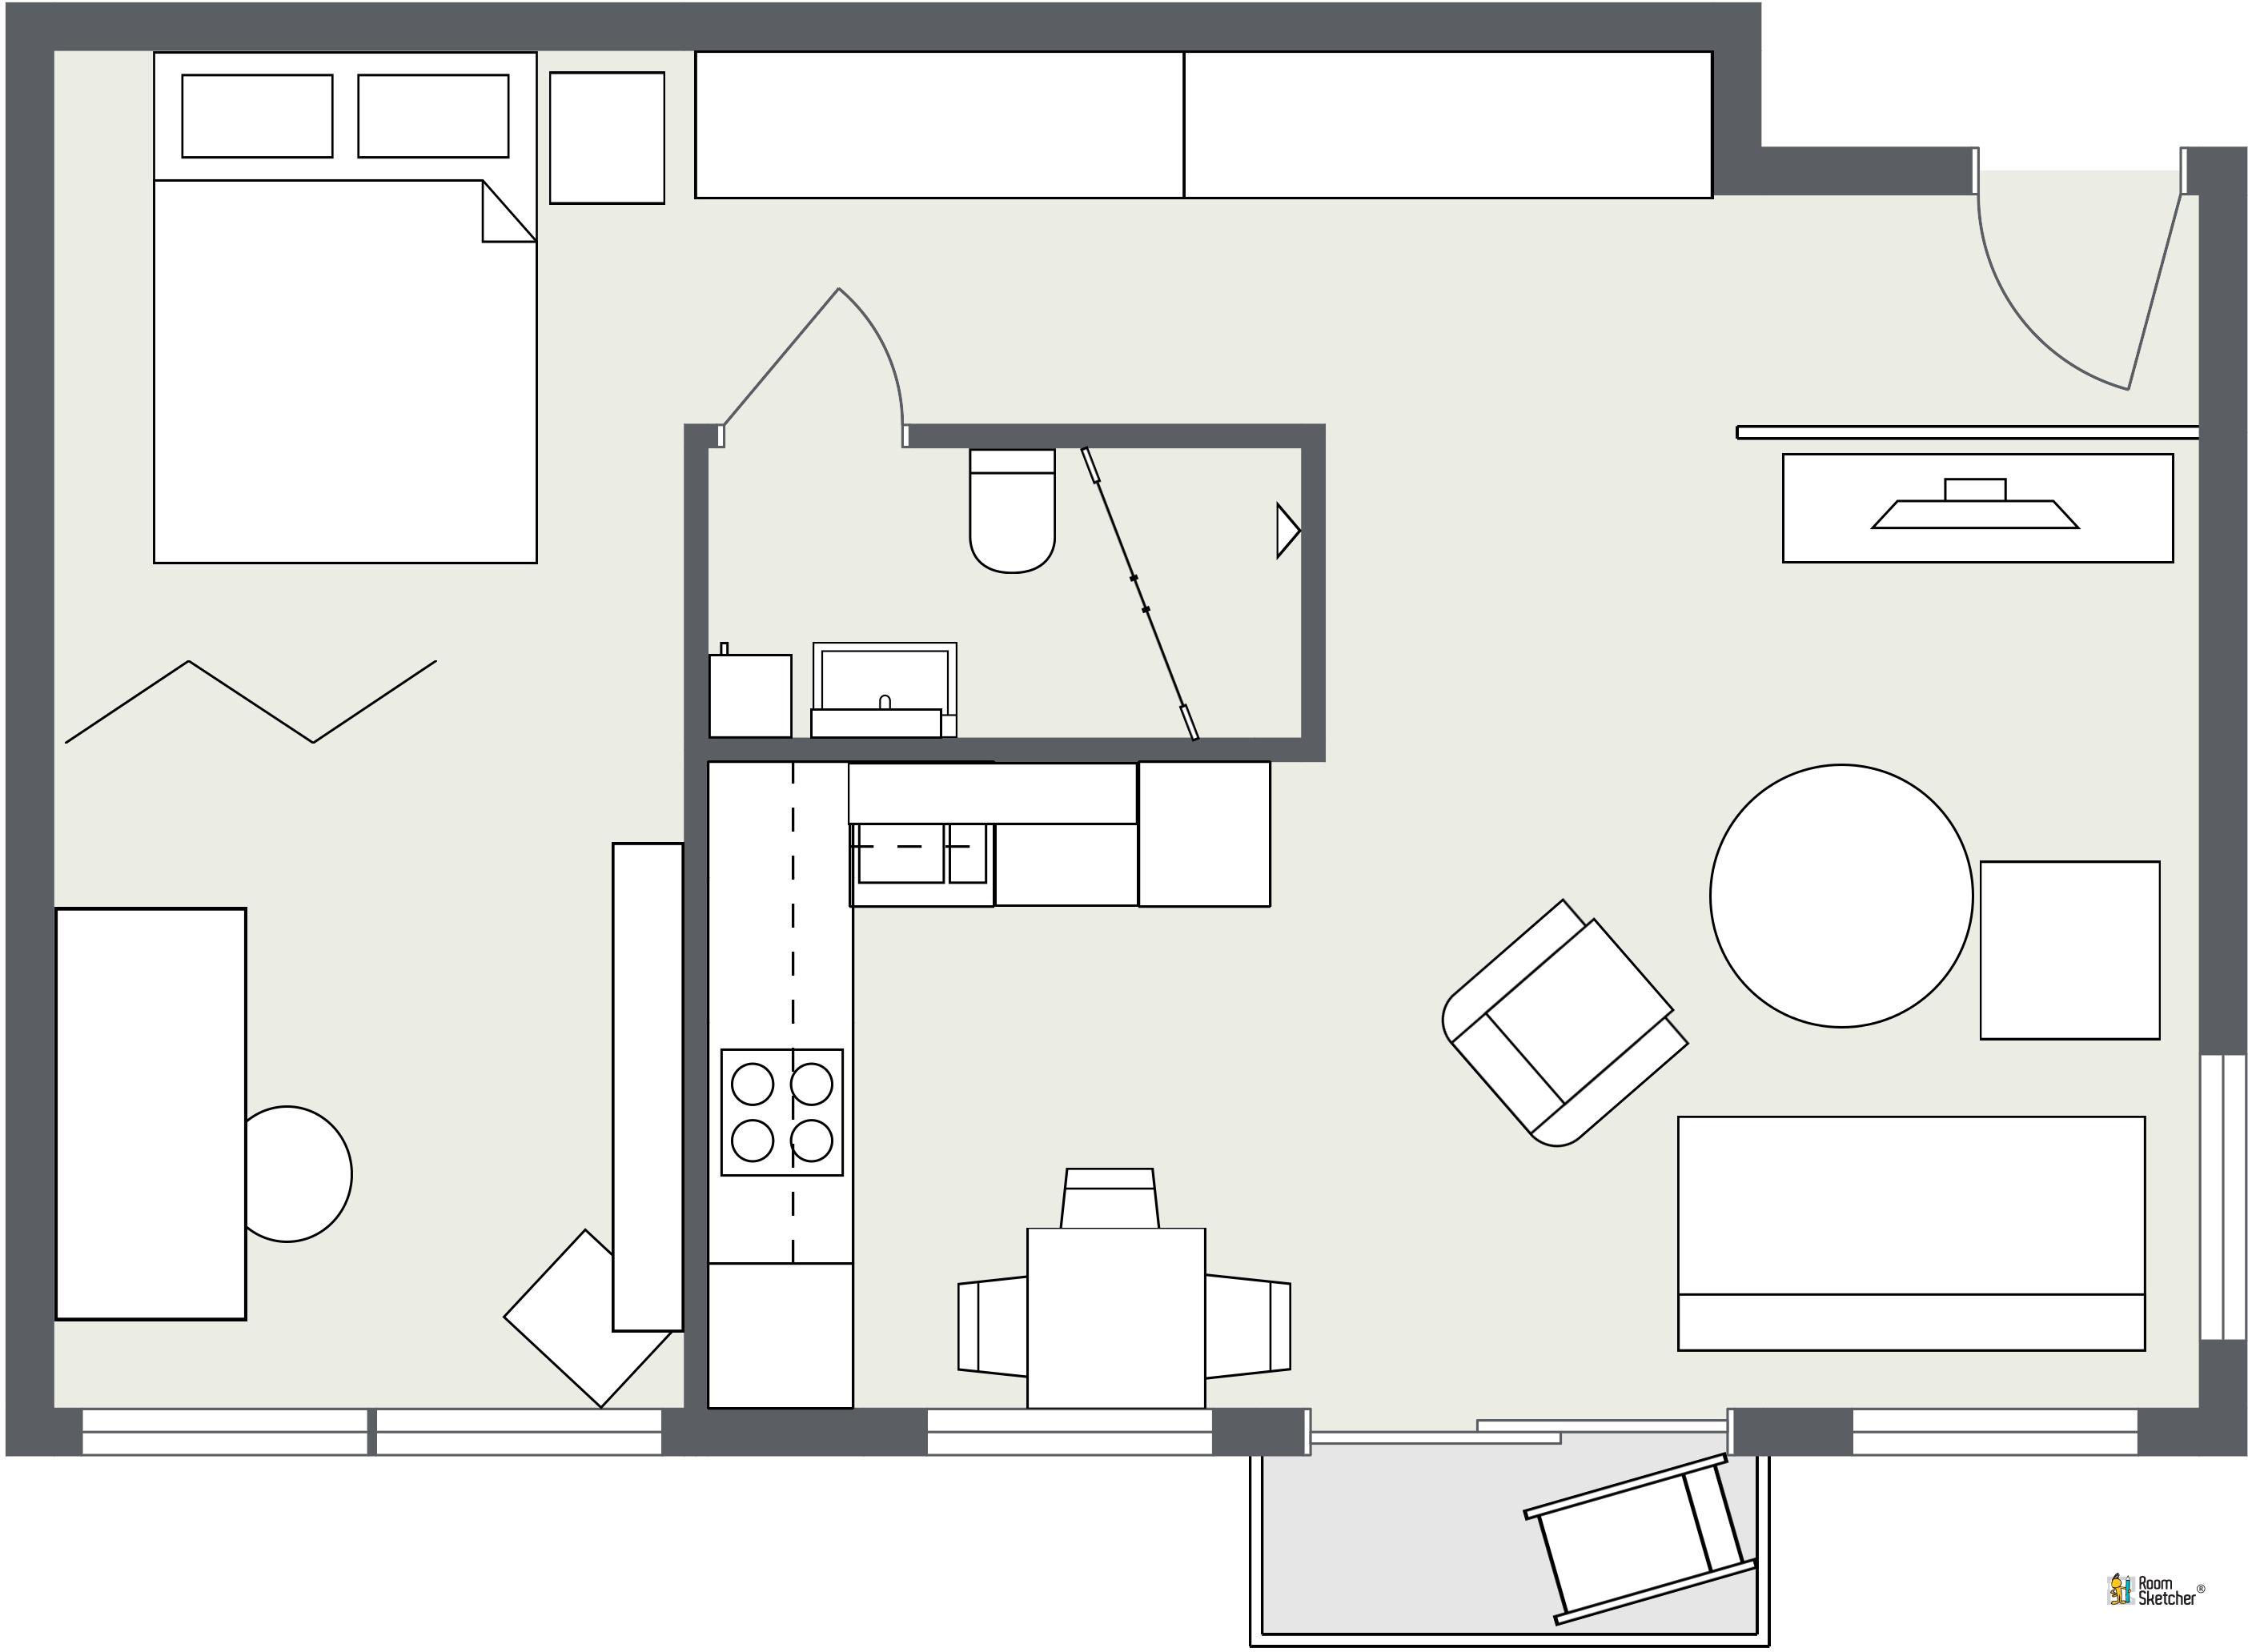 RoomSketcher Wohnidee: Kleine Wohnung einrichten - 2D Grundriss #grundriss #kleinerraum #kleinewohnungeinrichten ©RoomSketcher